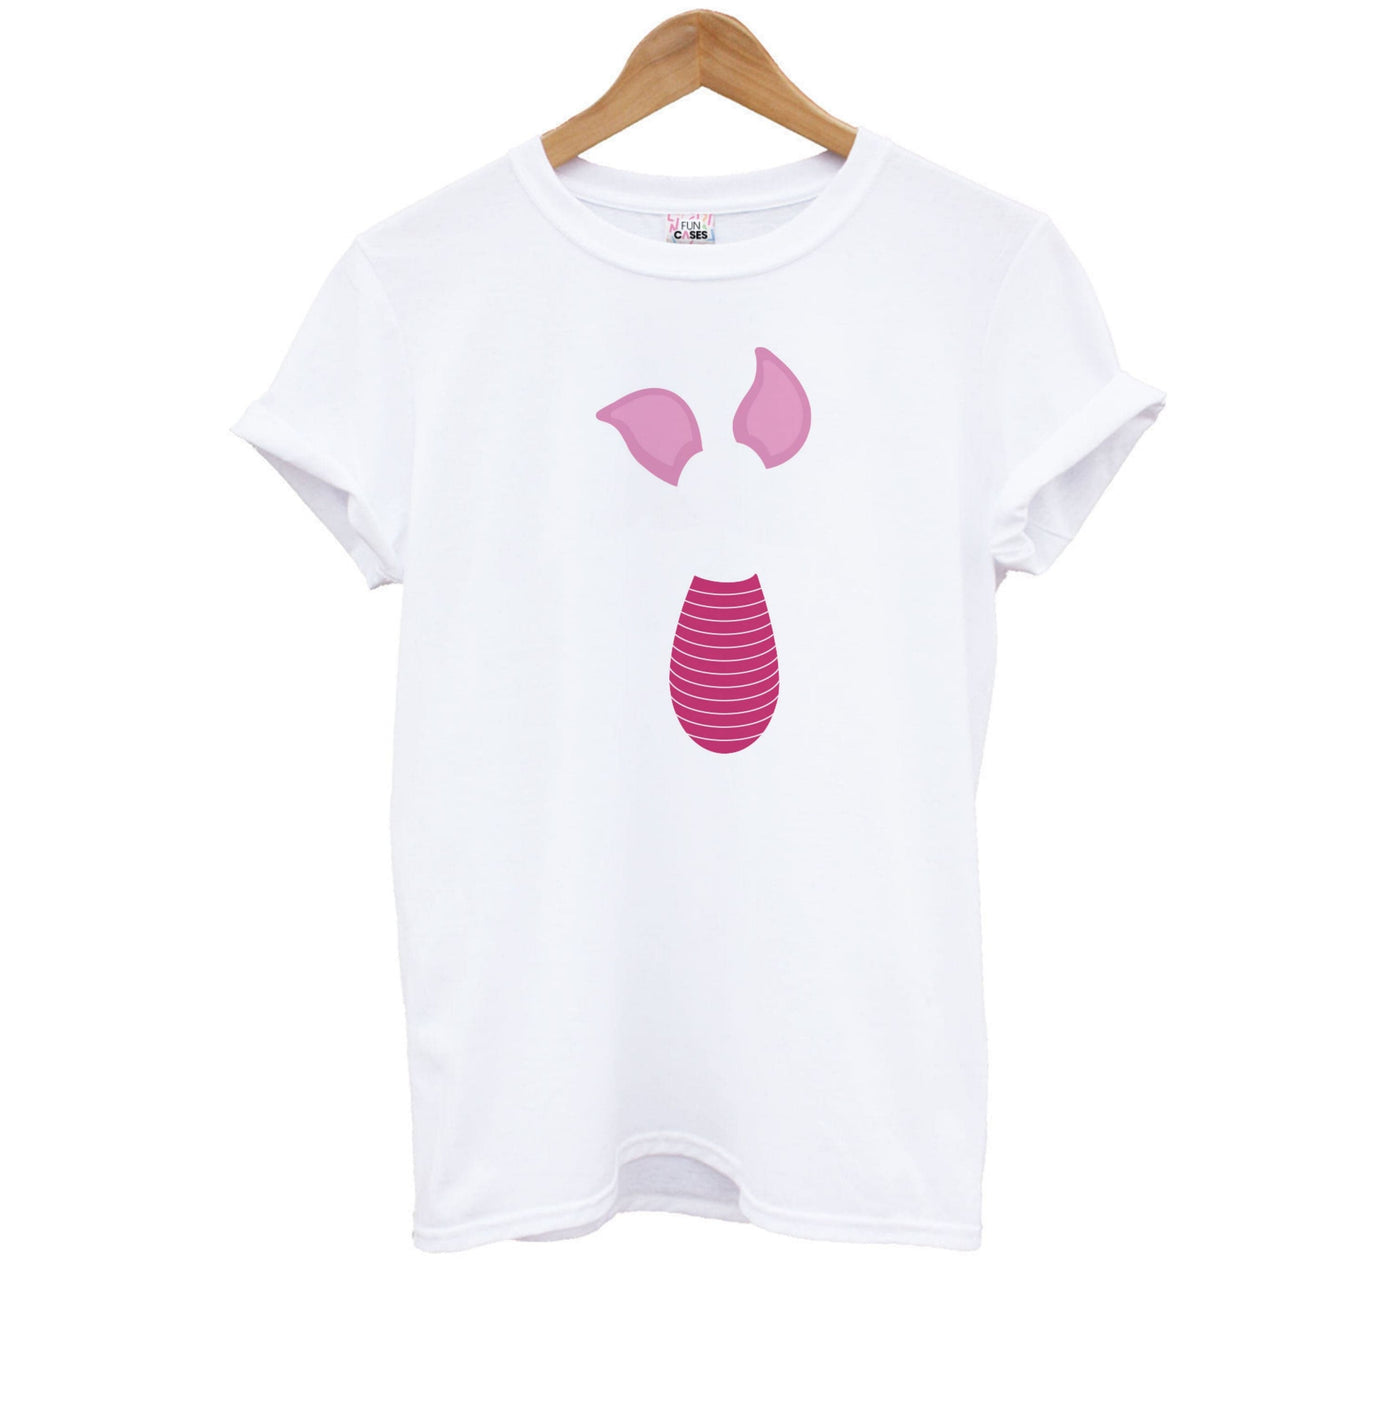 Faceless Piglet - Disney Kids T-Shirt